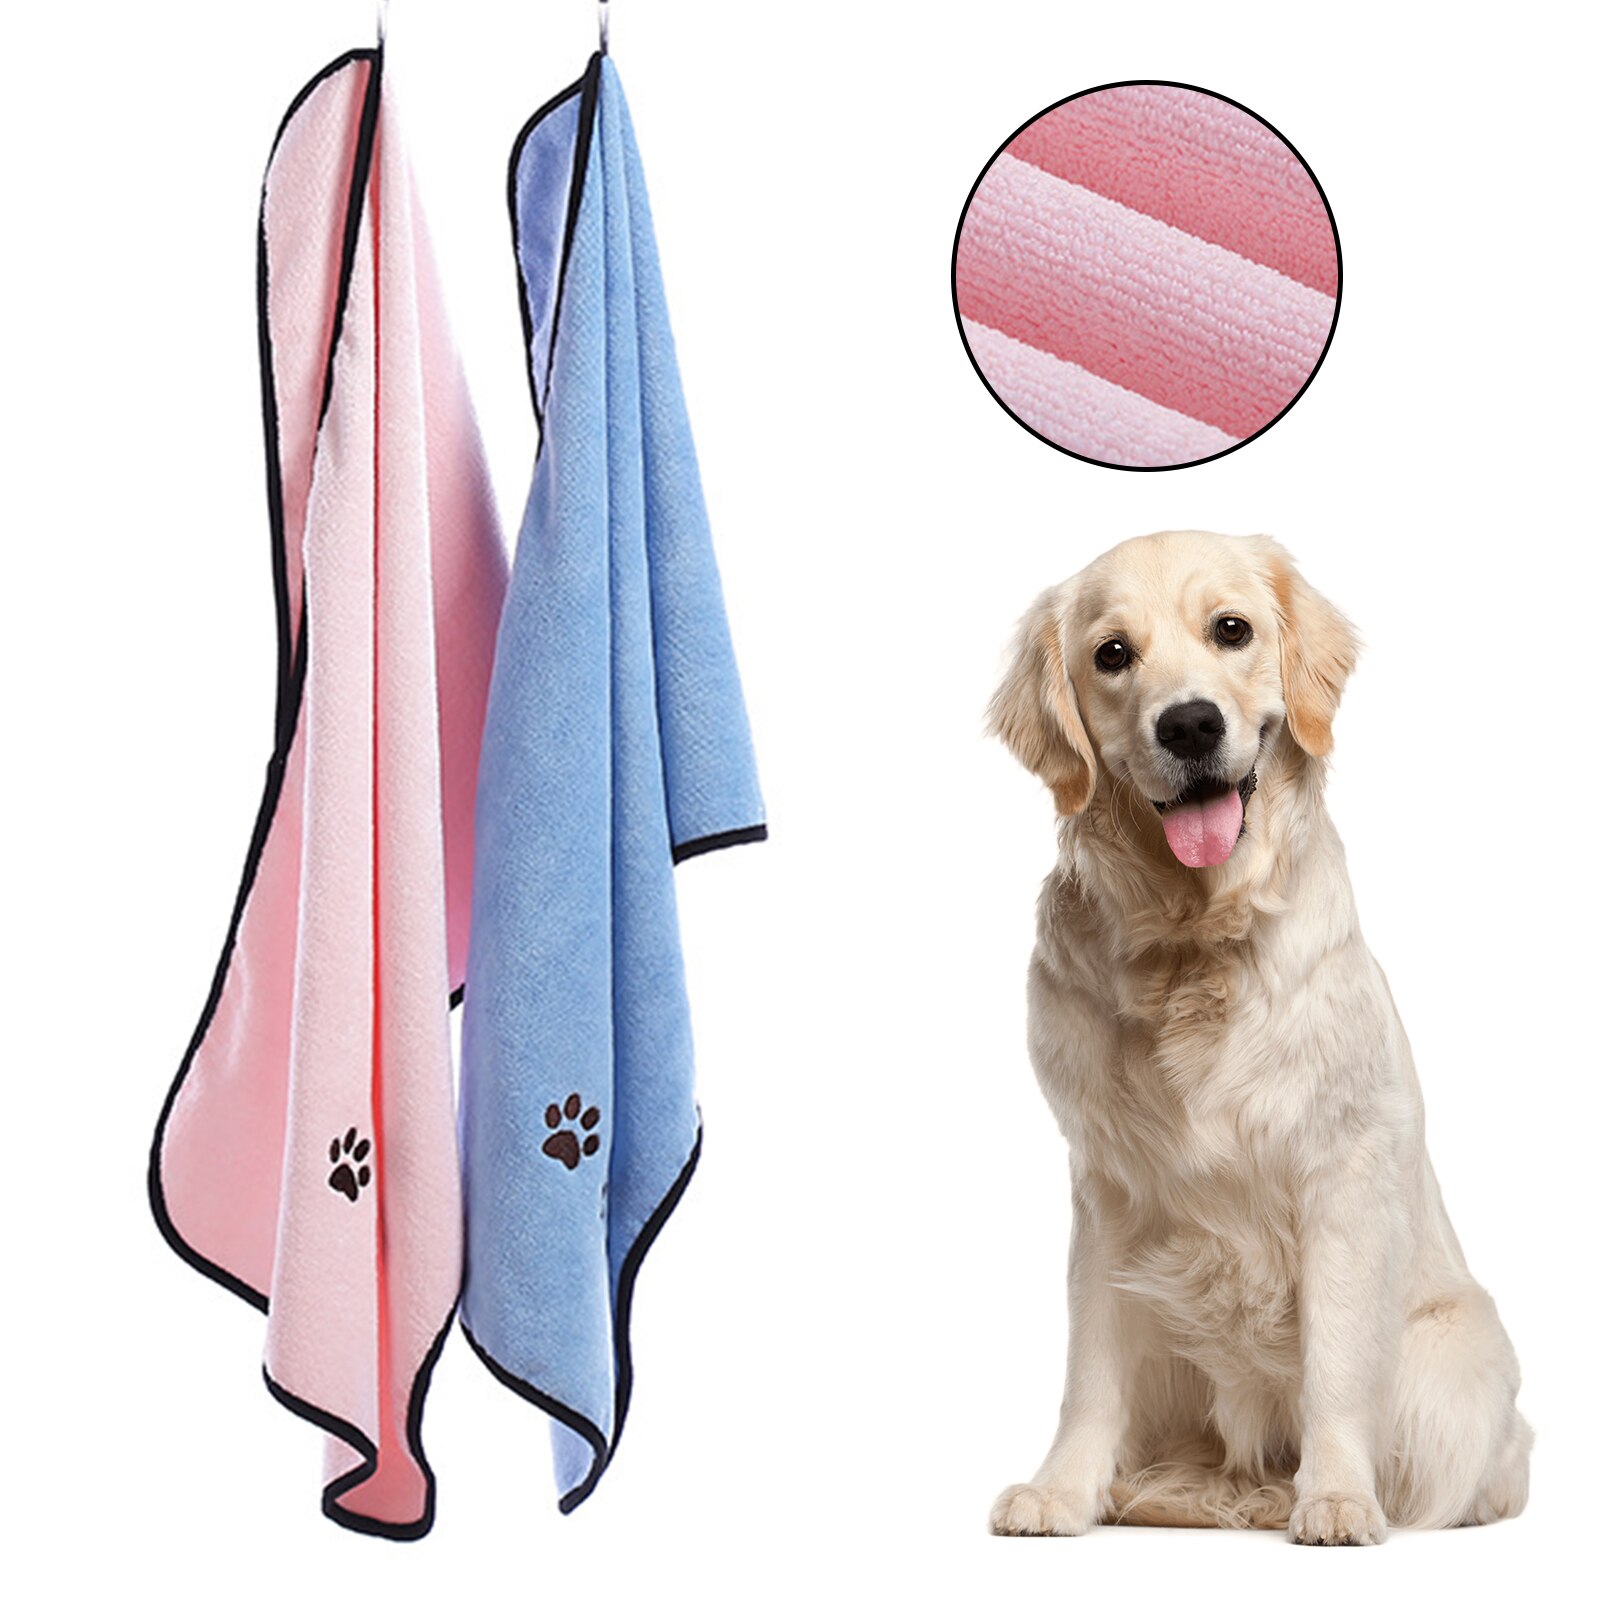 Huisdier Bad Handdoeken Voor Huisdieren Sneldrogende Handdoek Voor Honden Zachte Comfortabele Absorberend Voor Honden En Katten Voor Kleine/Medium Dieren